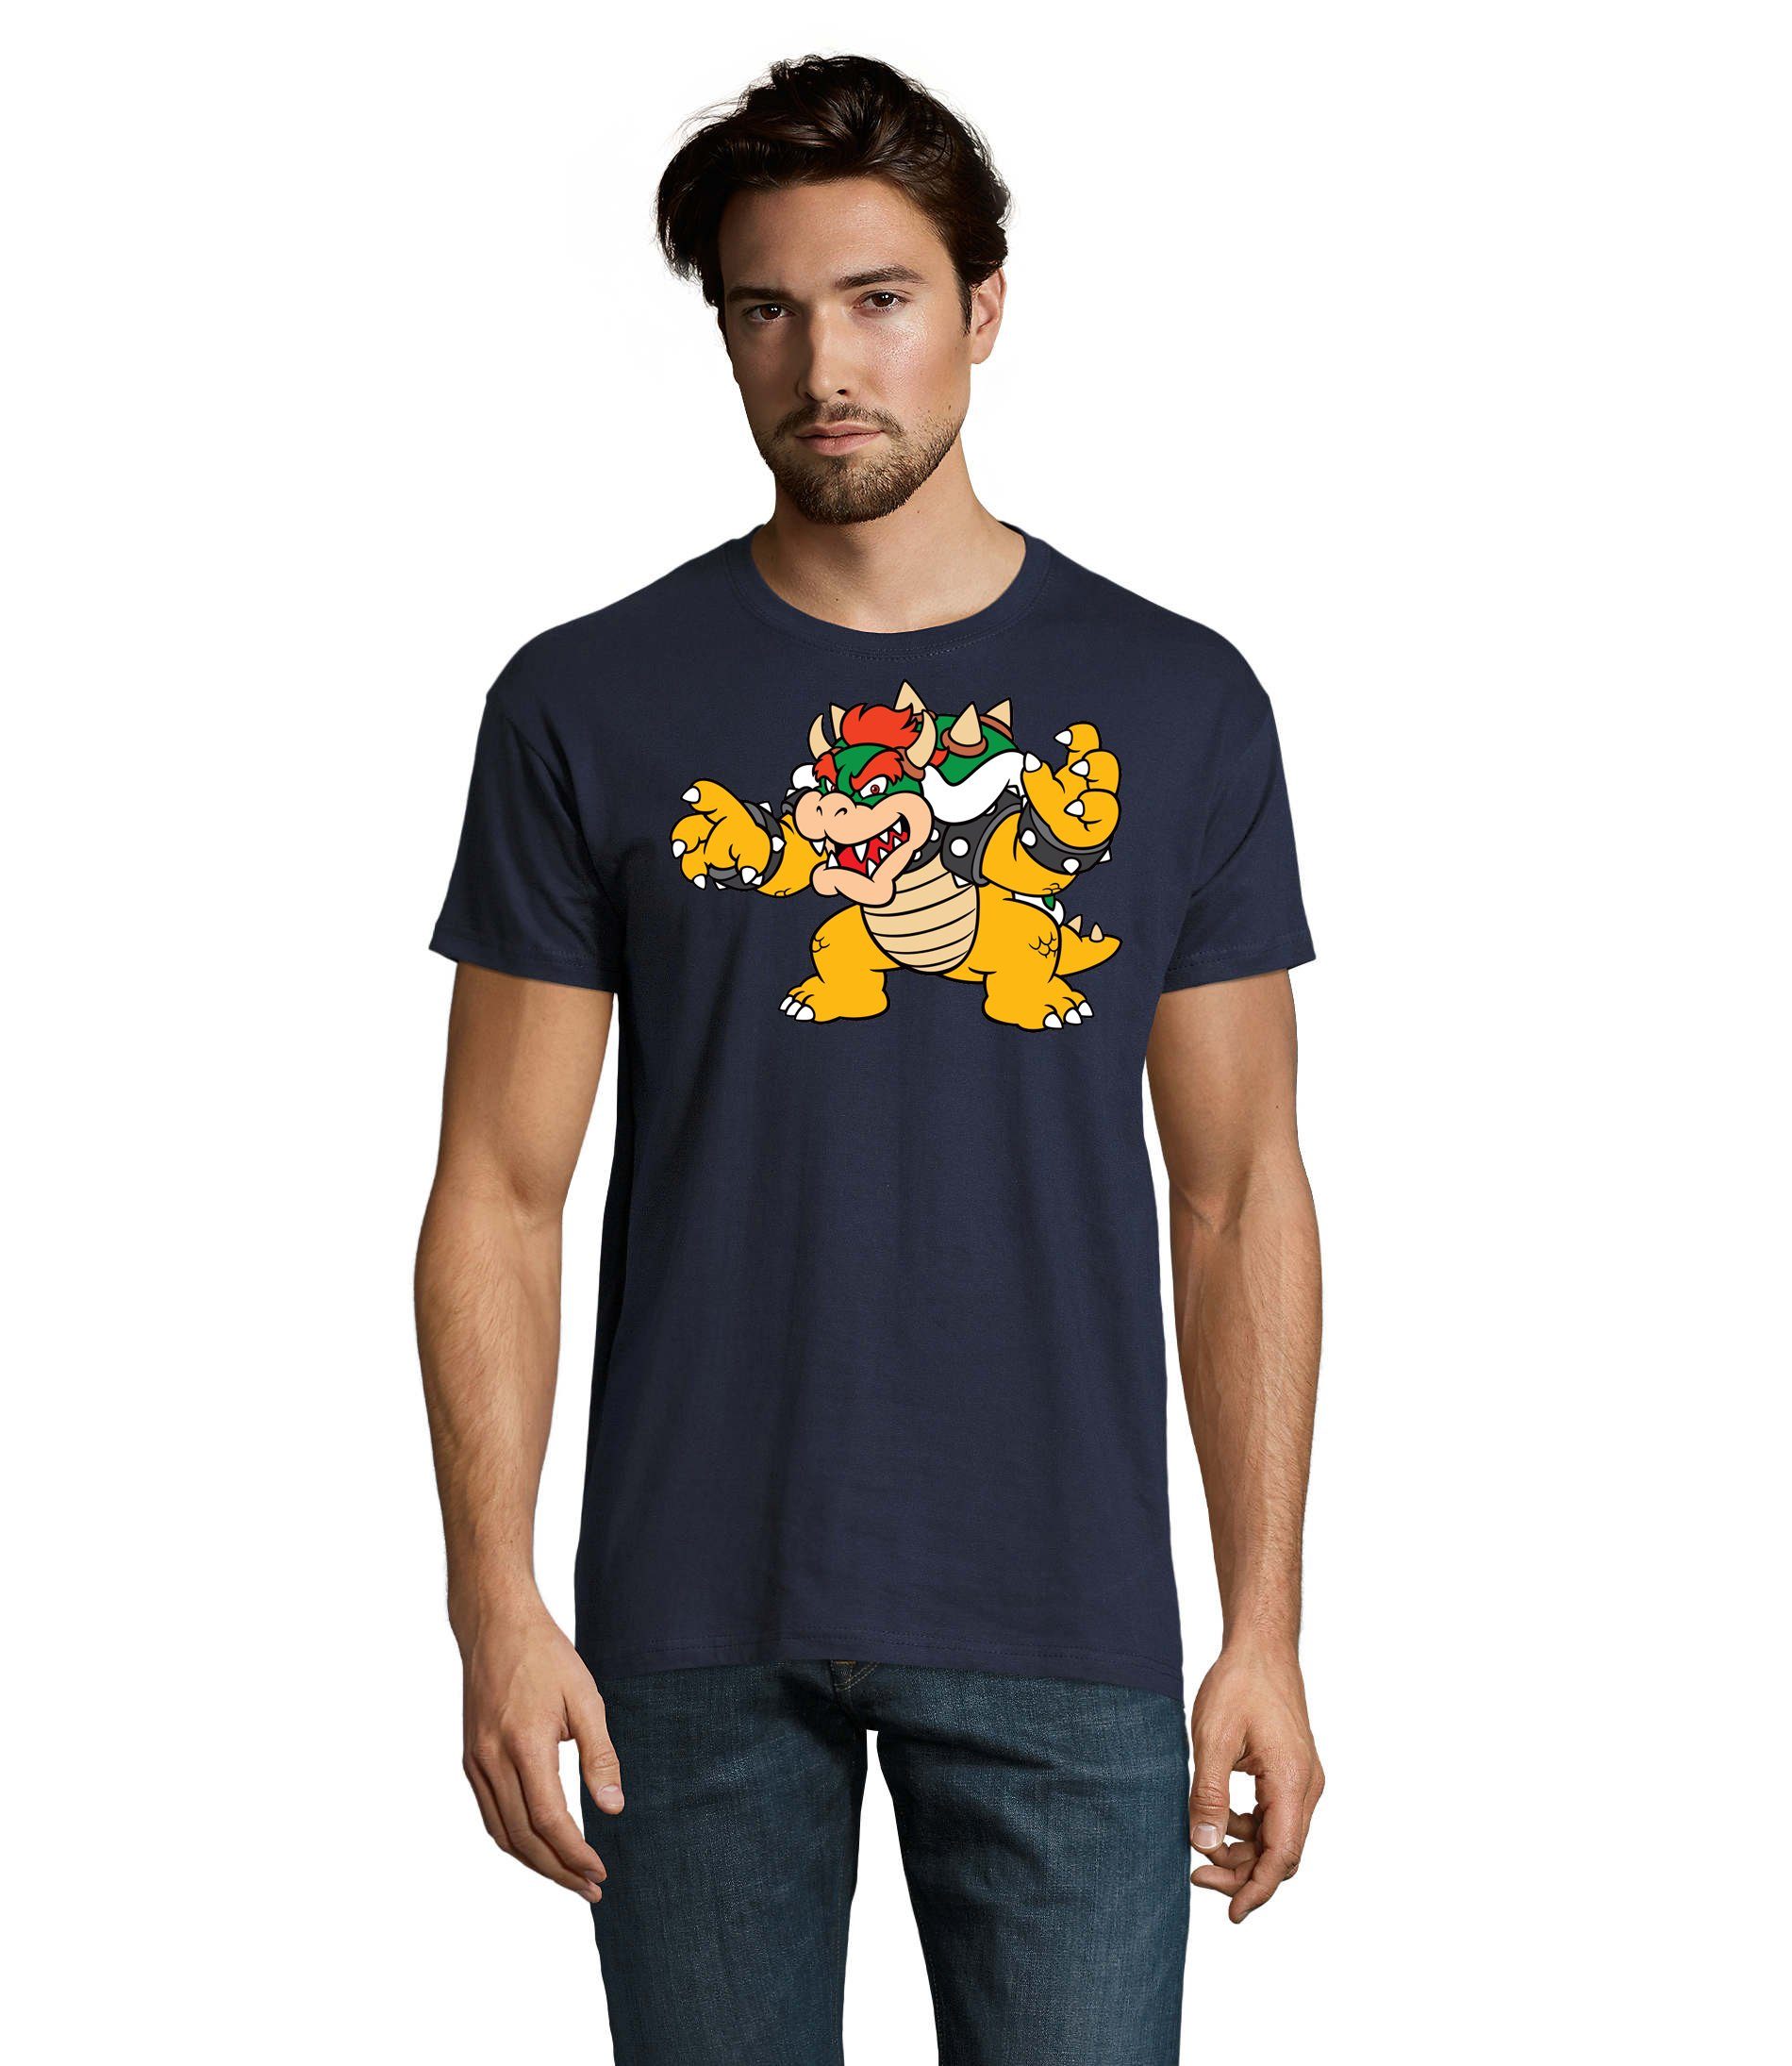 T-Shirt Blondie Herren Nintendo Konsole Game Luigi Yoshi Navyblau Mario Gamer & Gaming Brownie